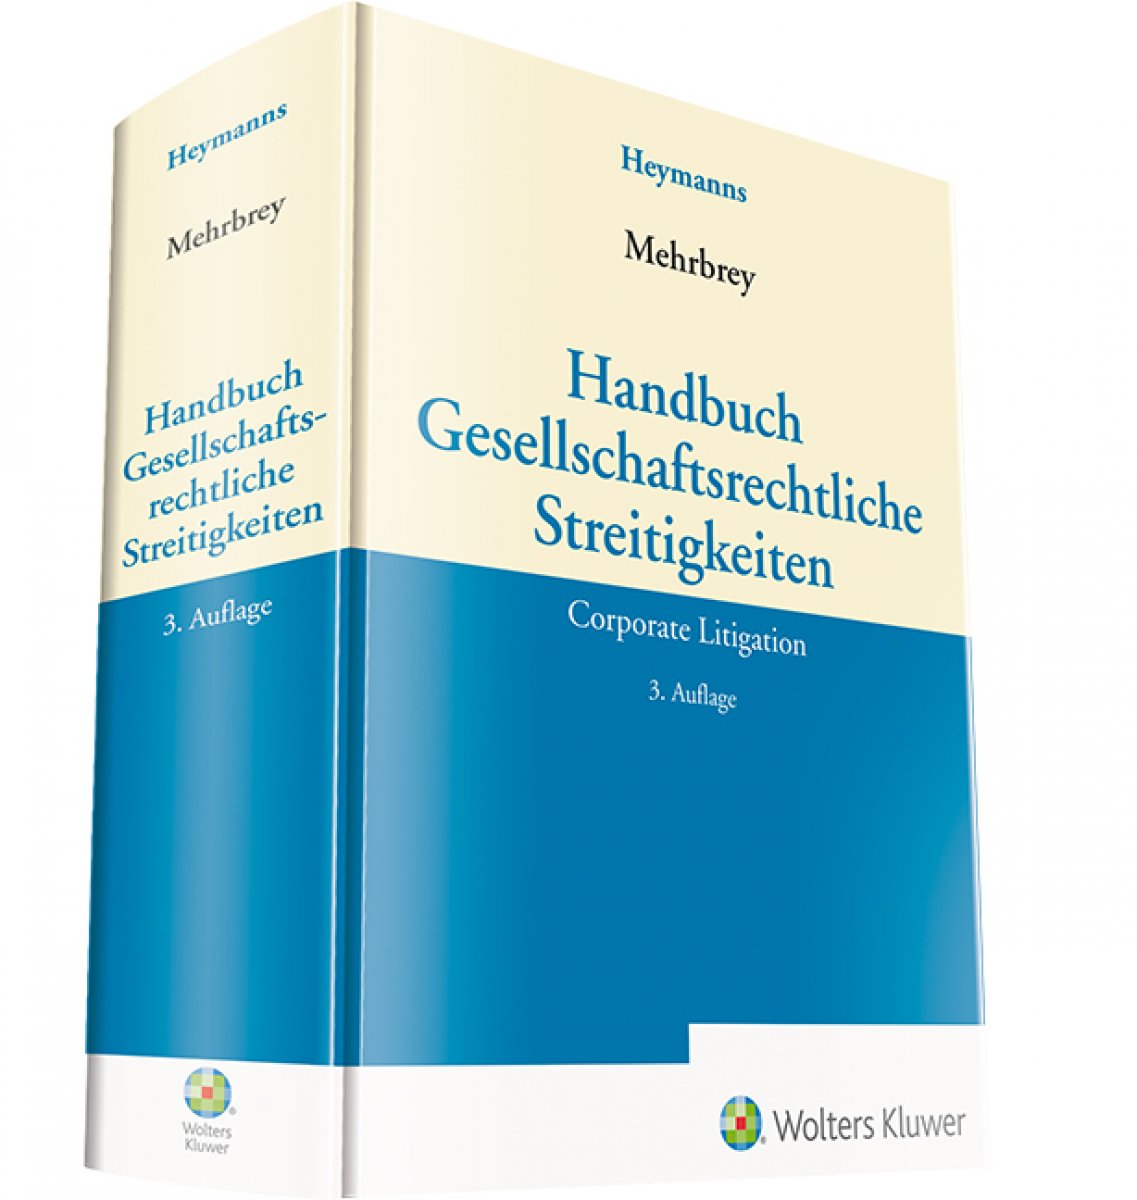 Handbuch Gesellschaftsrechtliche Streitigkeiten | Mehrbrey